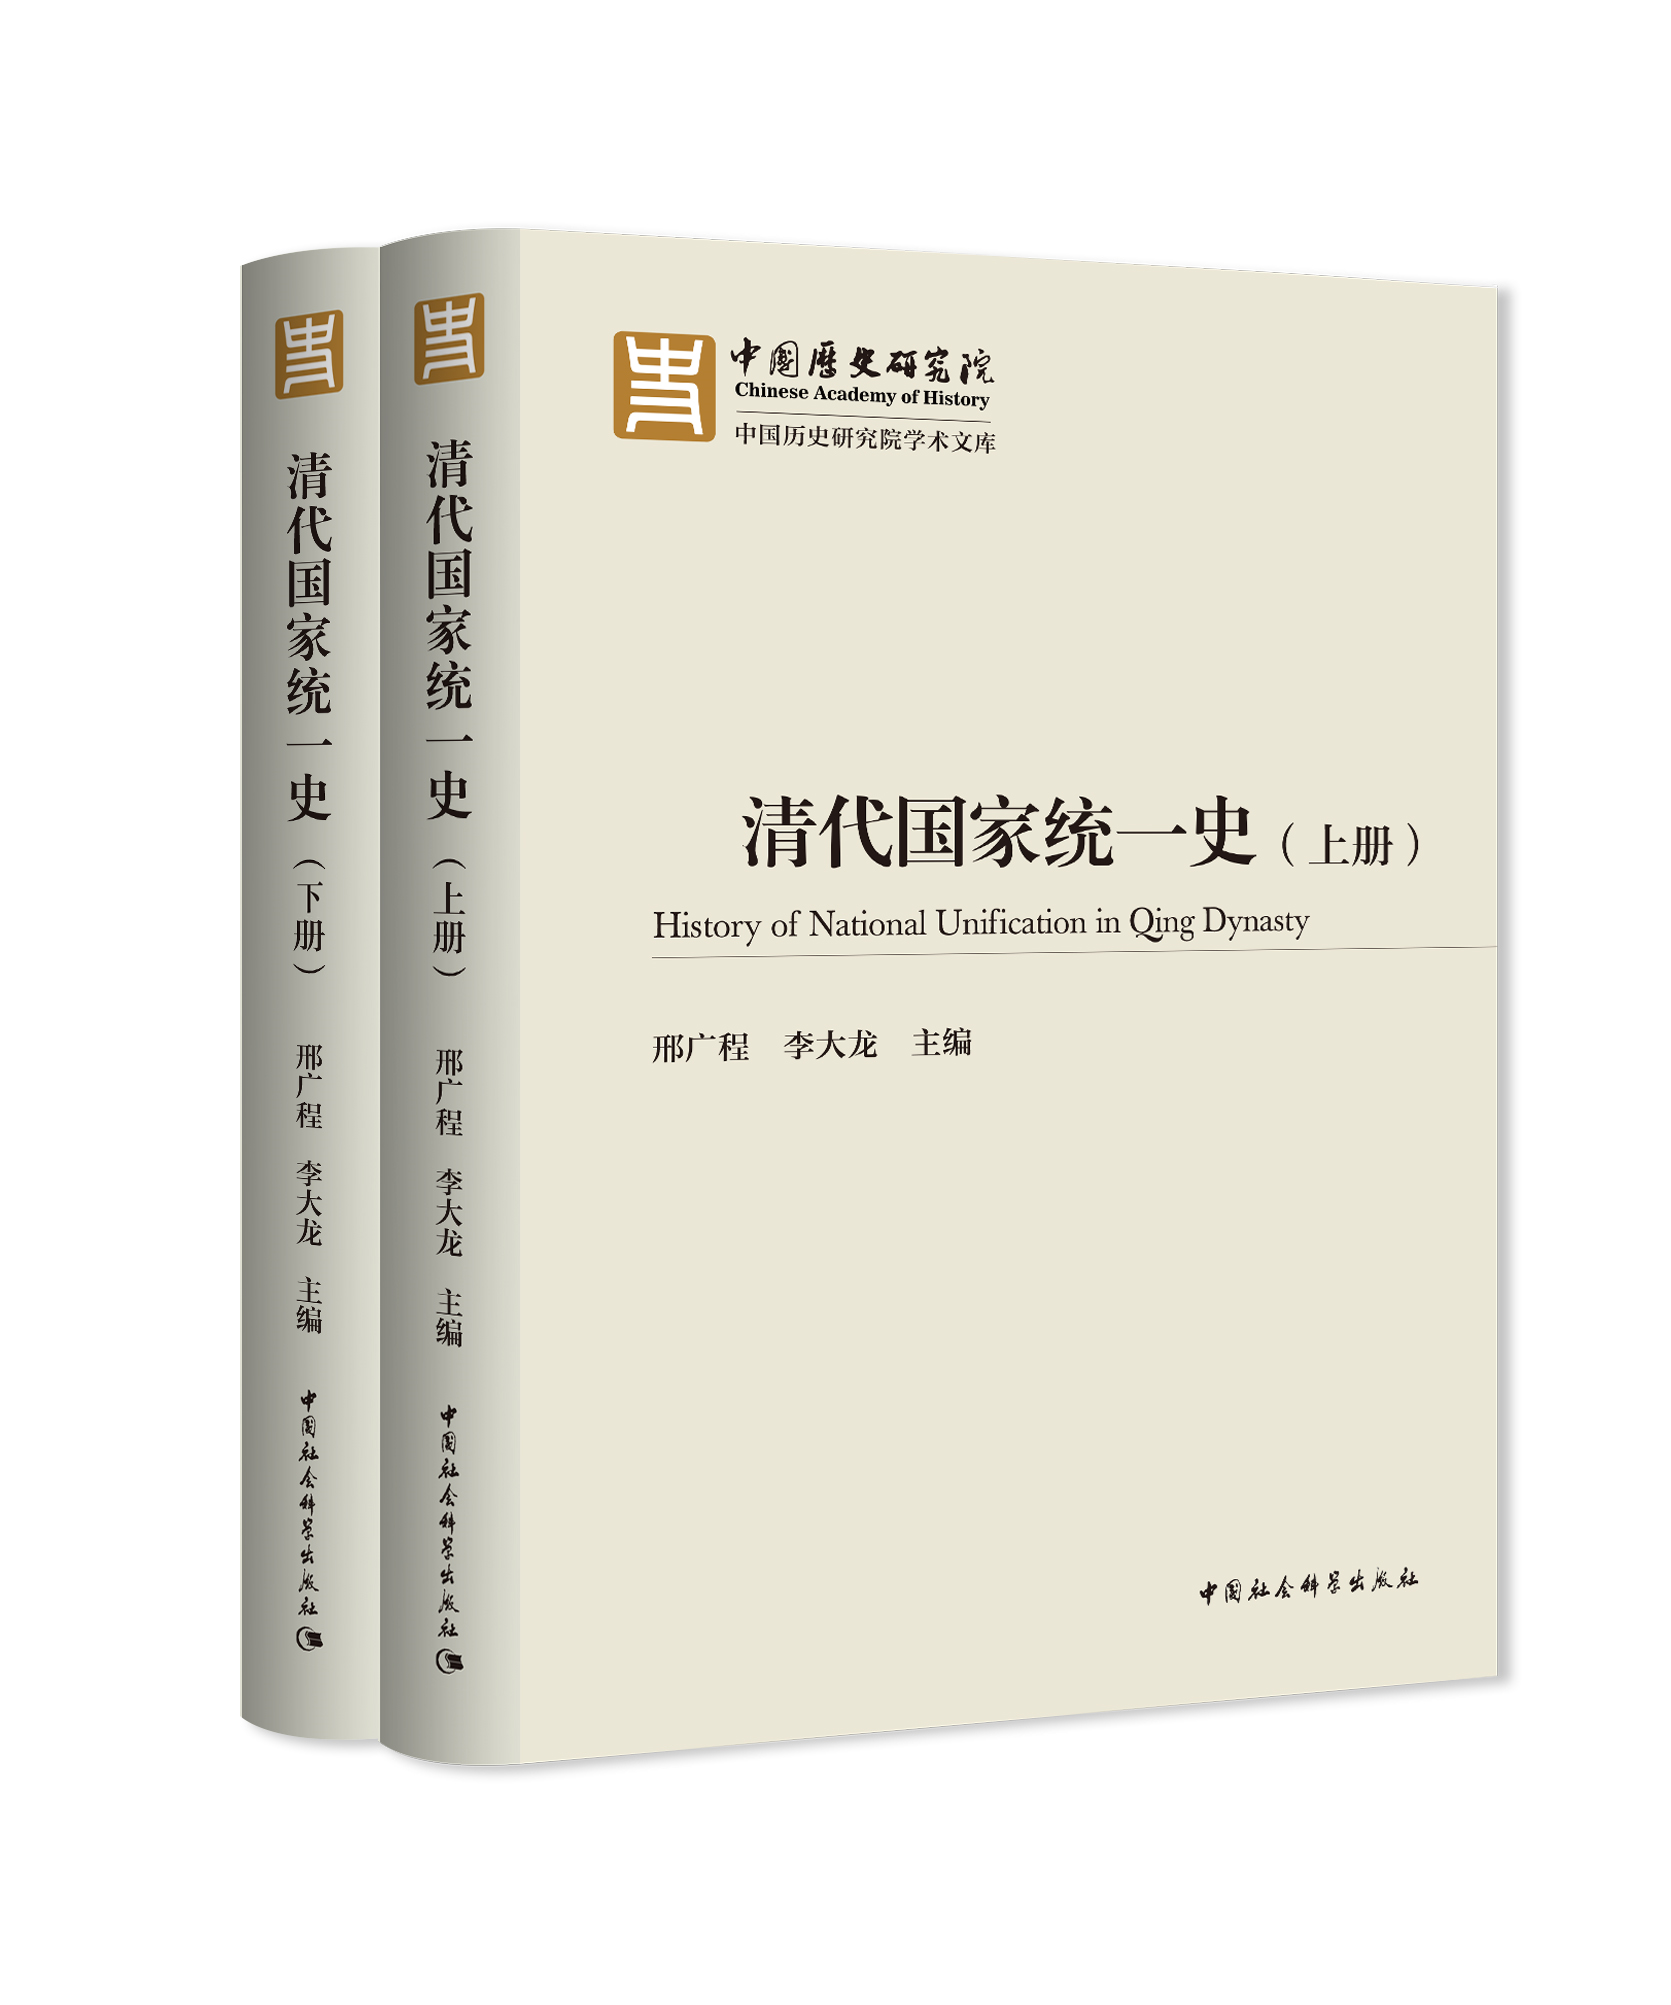 中国历史研究院成立后首批重大项目《清代国家统一史》发布